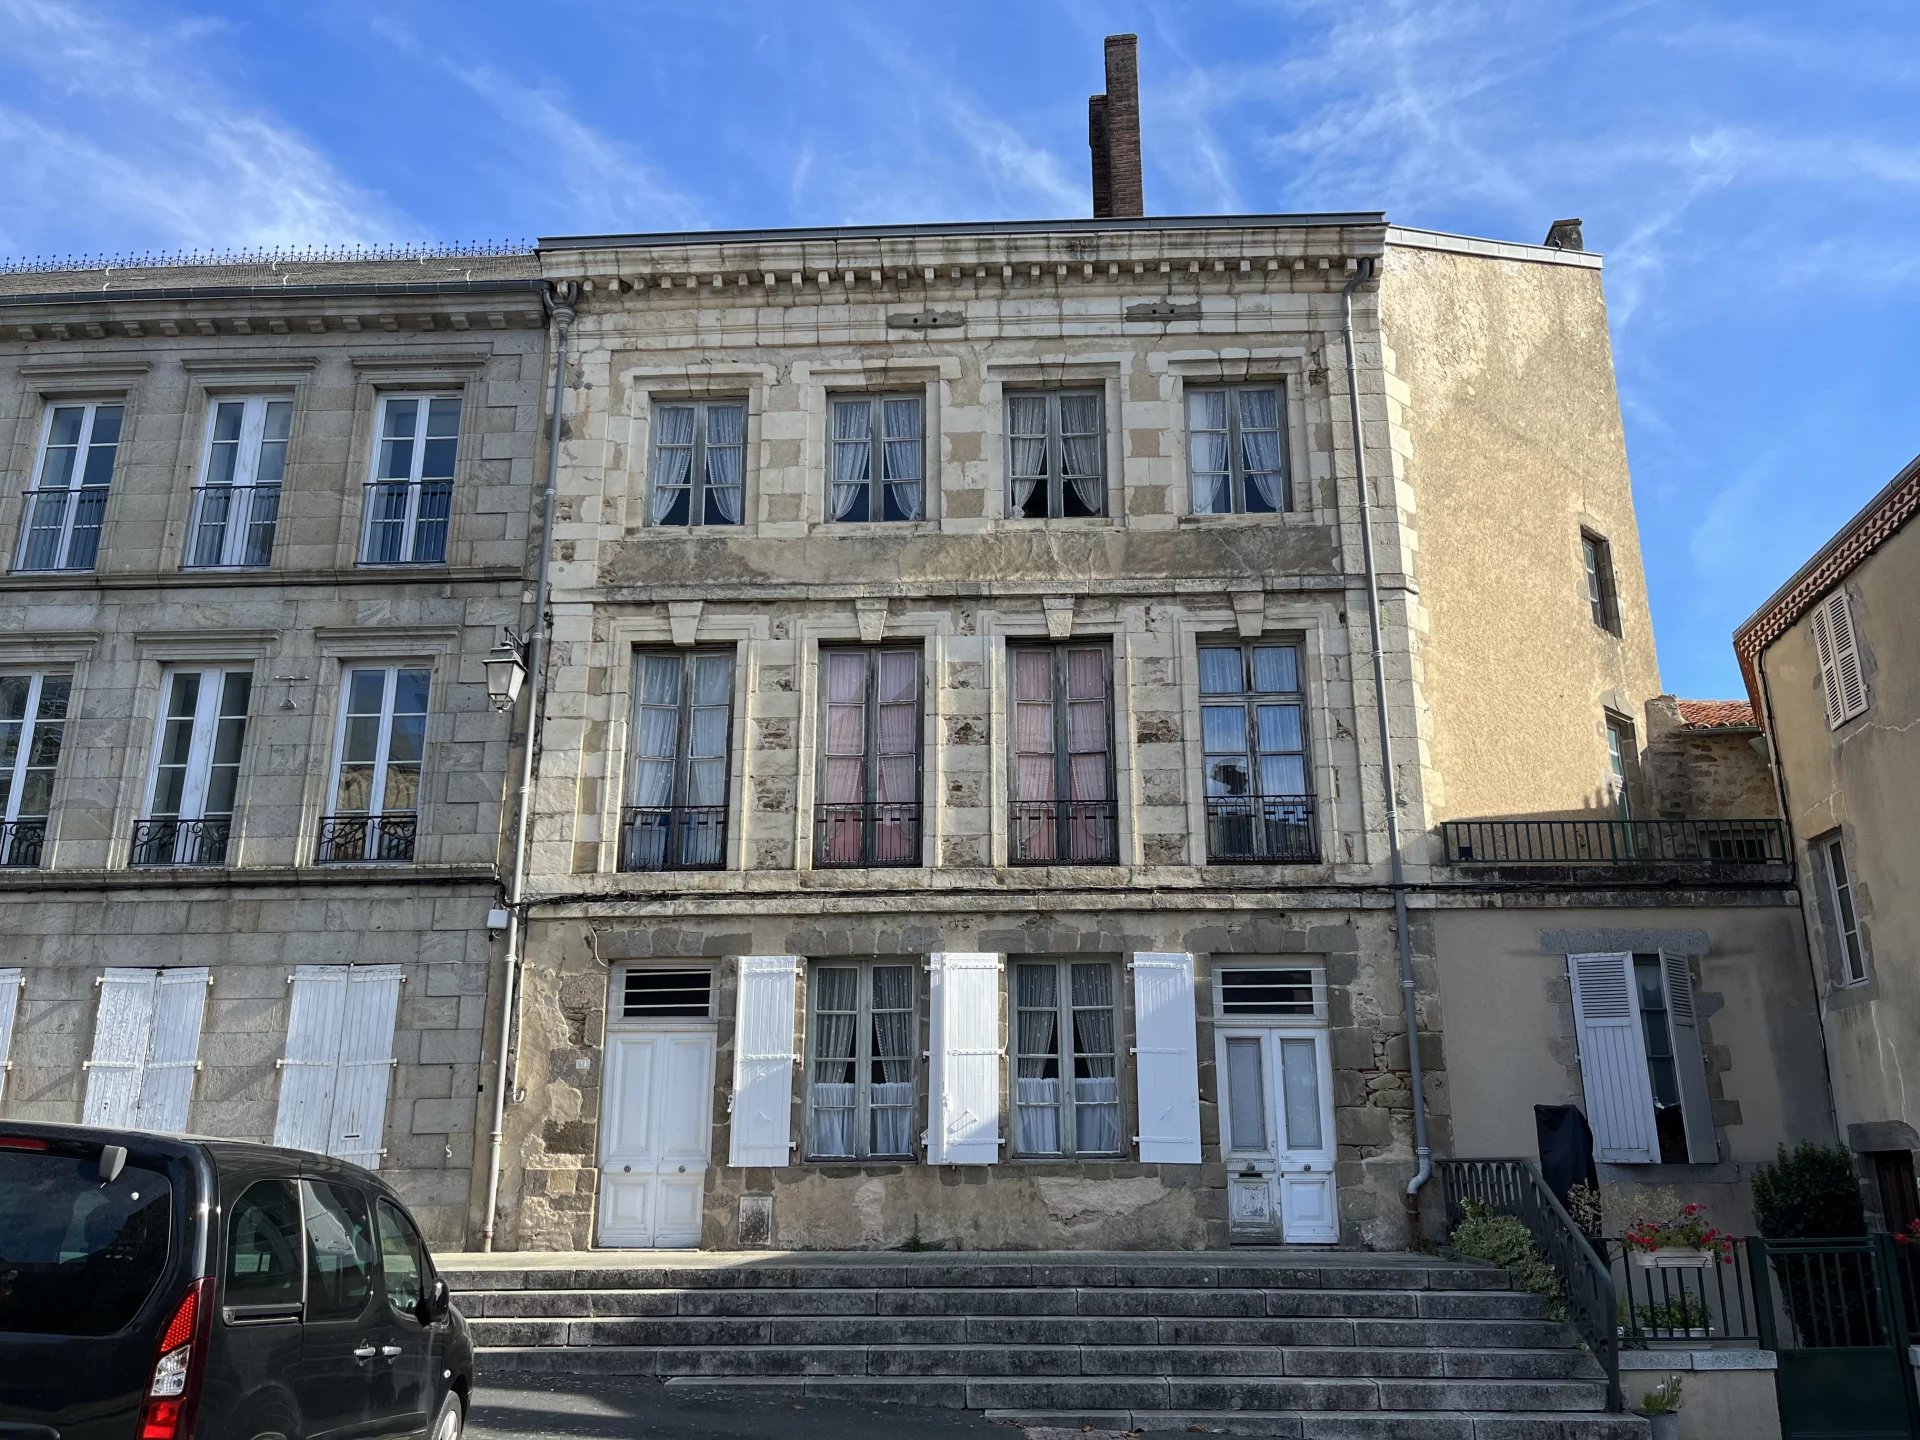 Fantastic maison de maître renovation project in the centre of Le Dorat